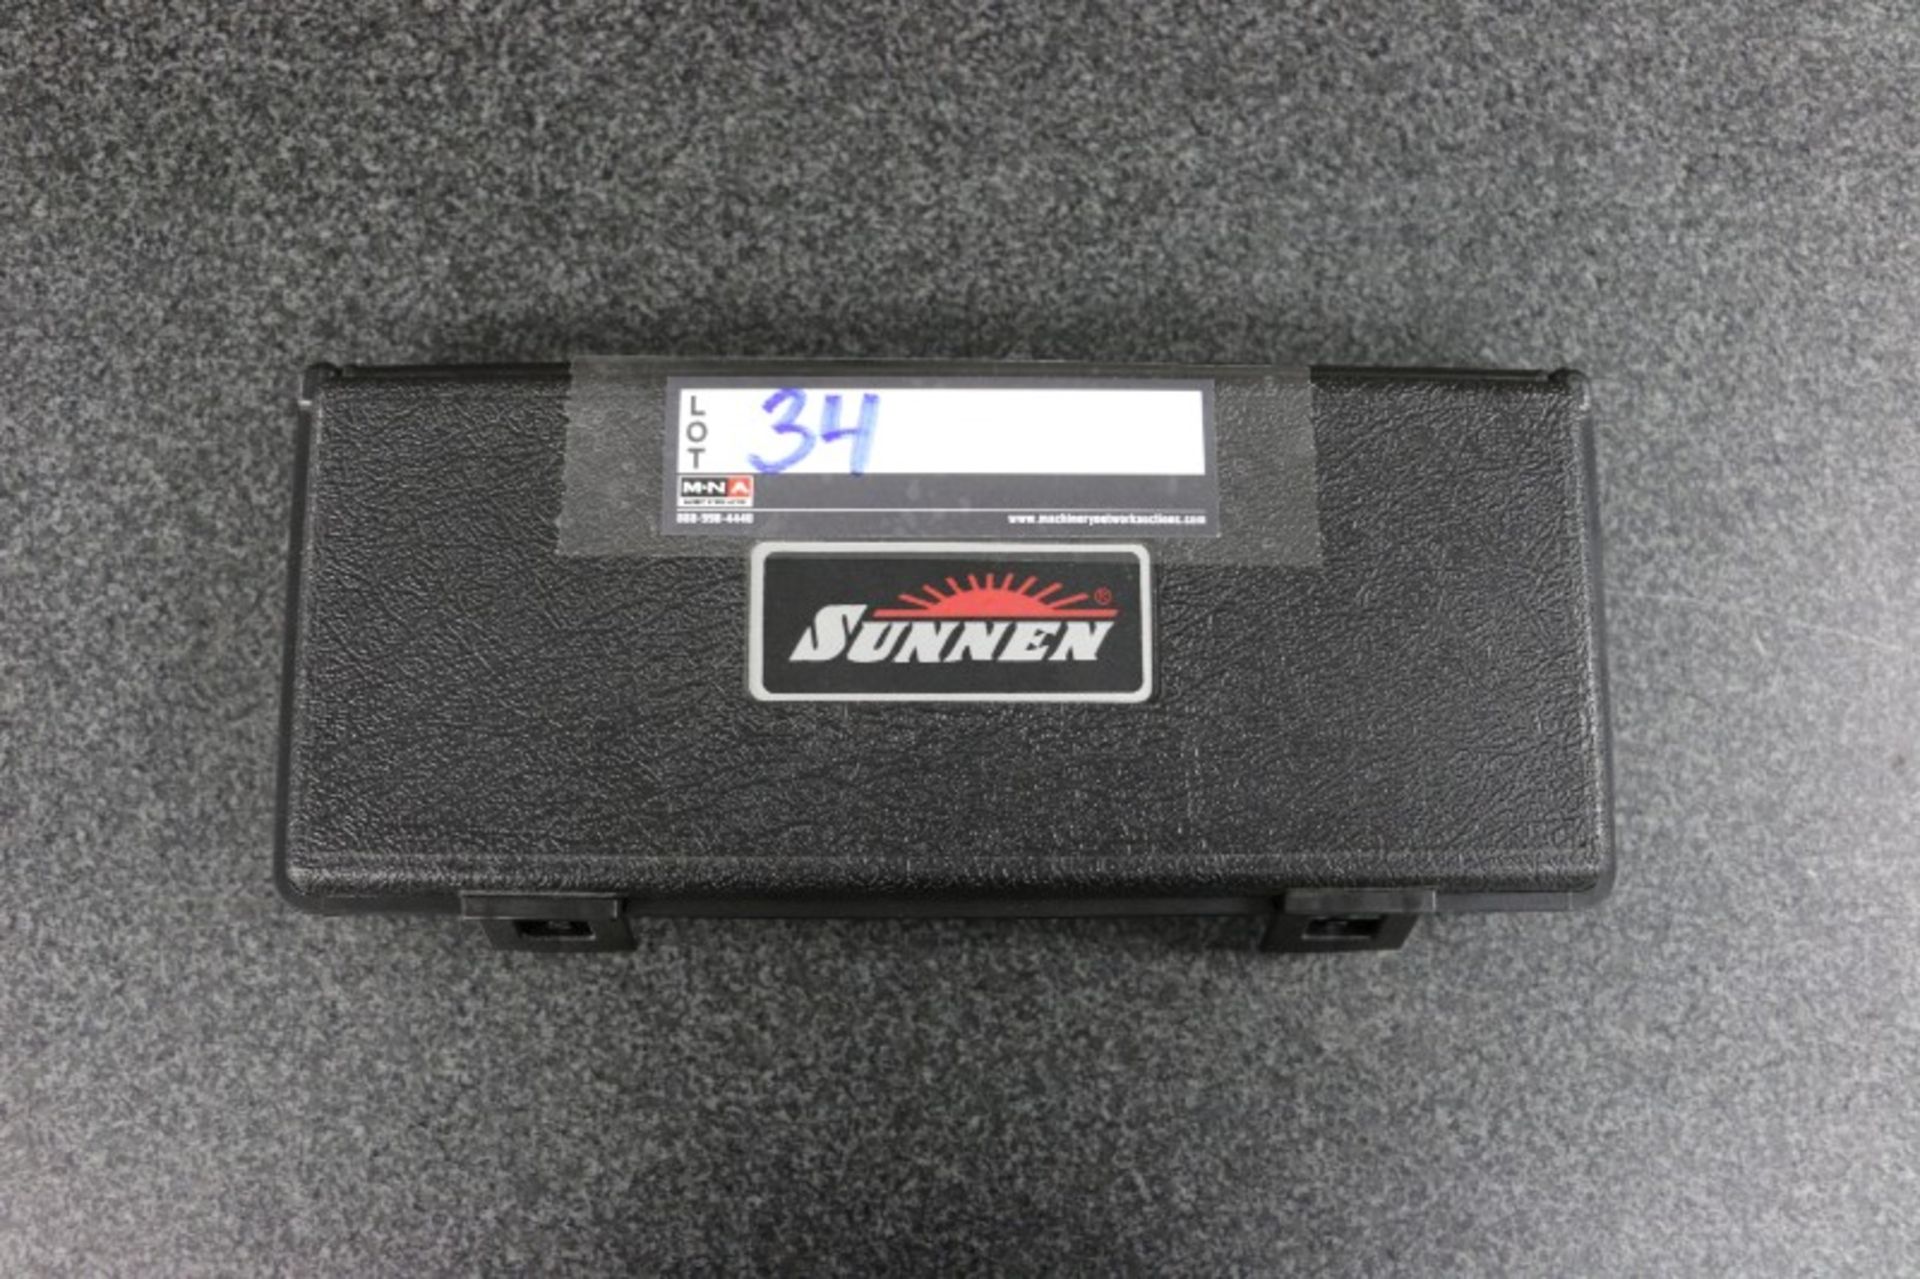 Sunnen G-3025 Adjustable Probe Kit - Image 4 of 4